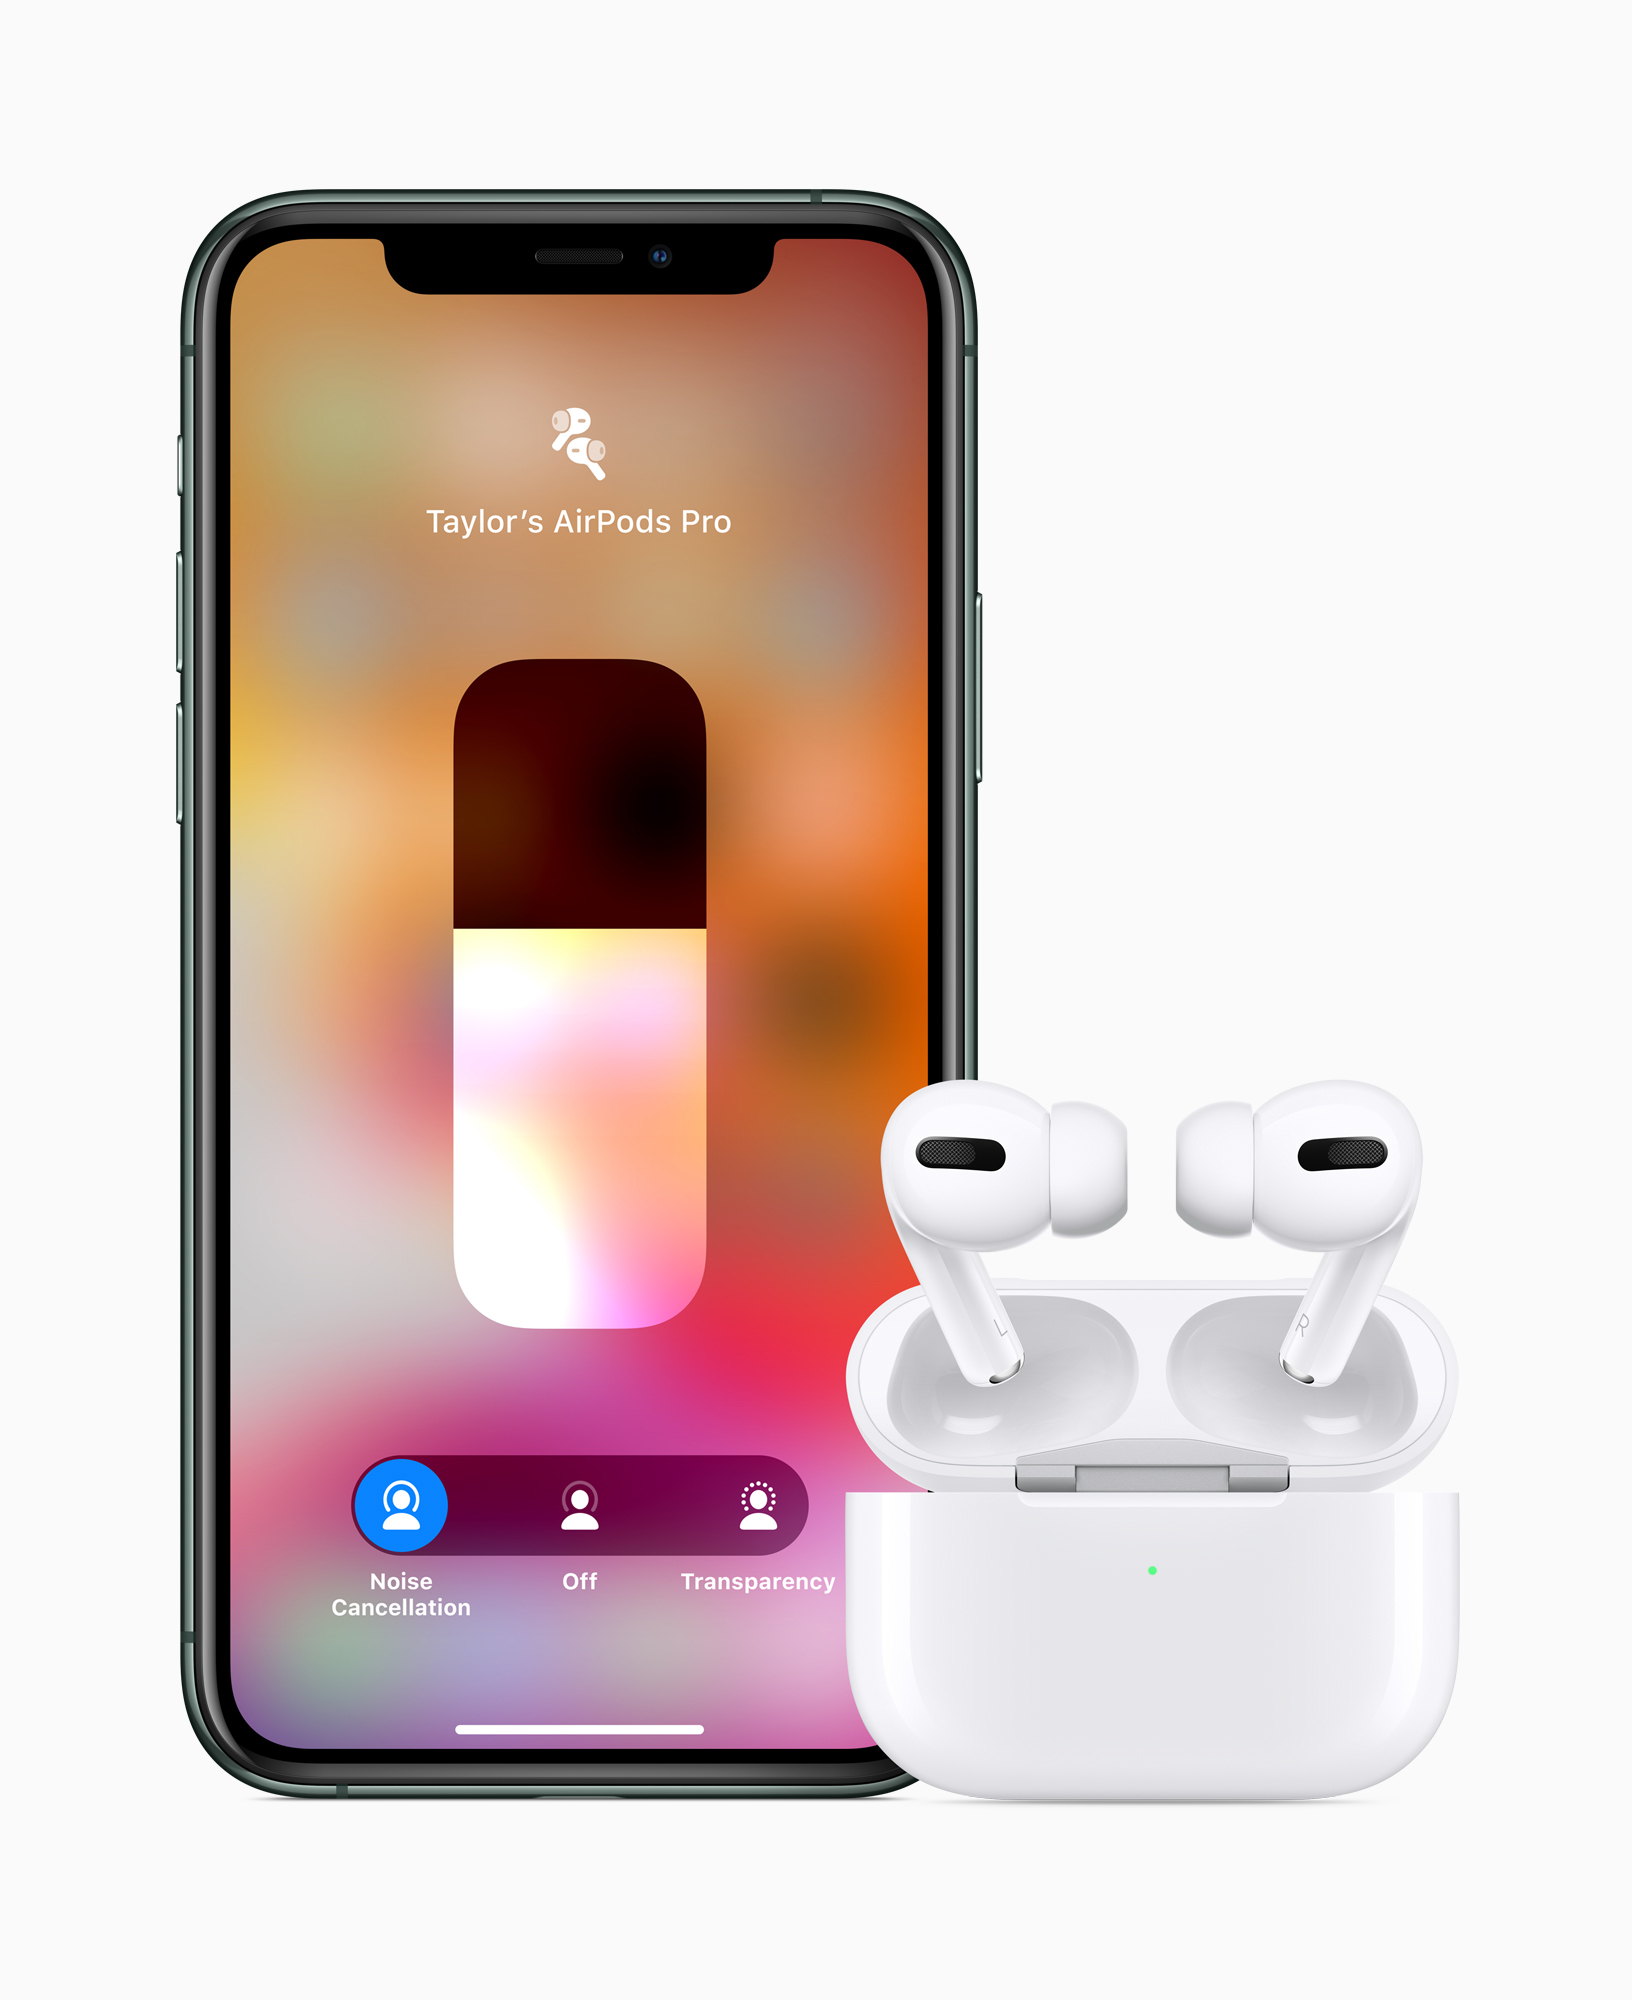 AirPods Pro cena nowe słuchawki bezprzewodowe Apple premiera gdzie kupić najtaniej w Polsce opinie